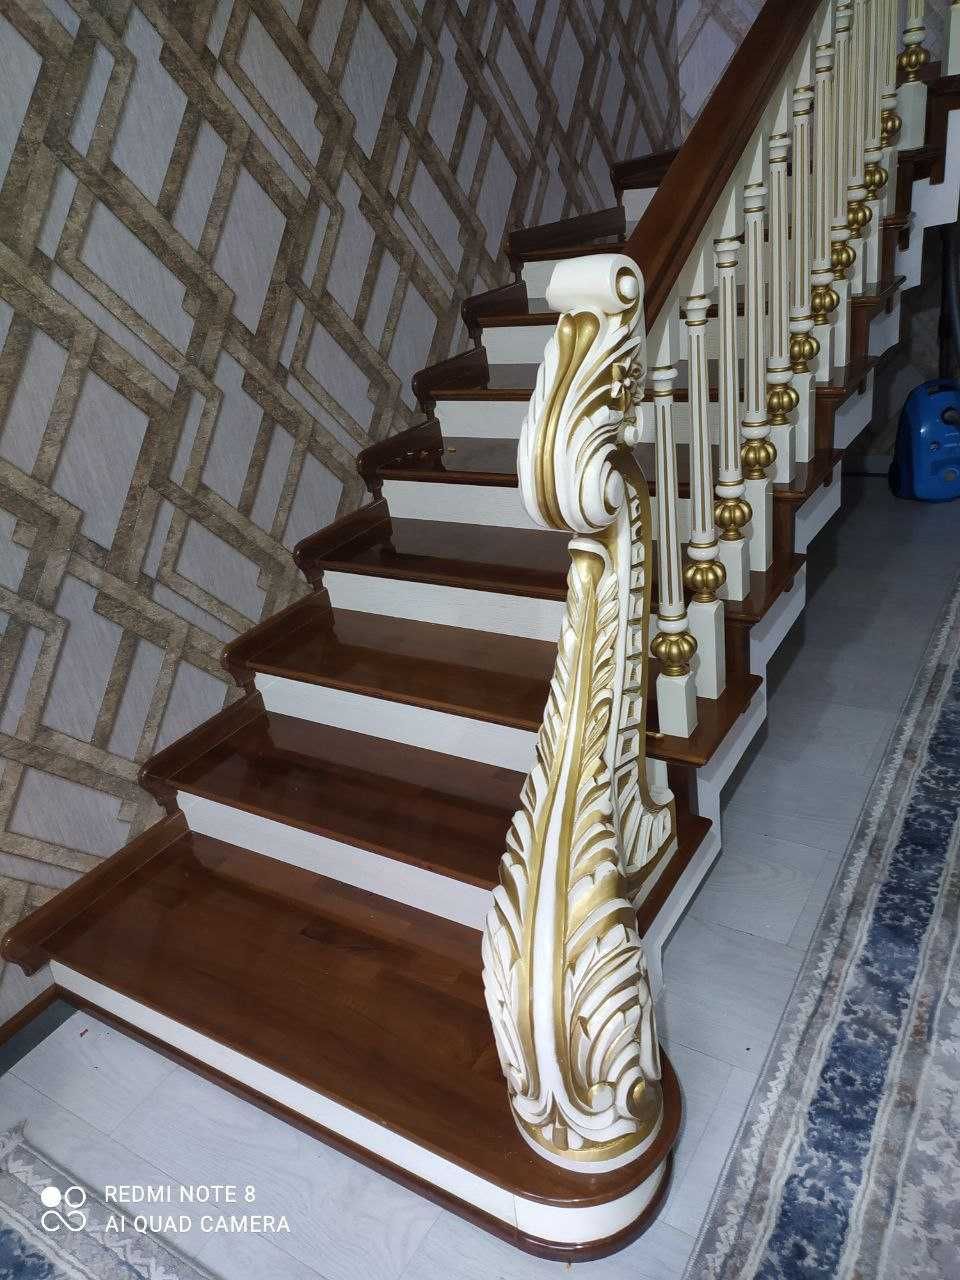 деревянные лестницы обшивка апшифка  лестница зина zina apshifka mdf